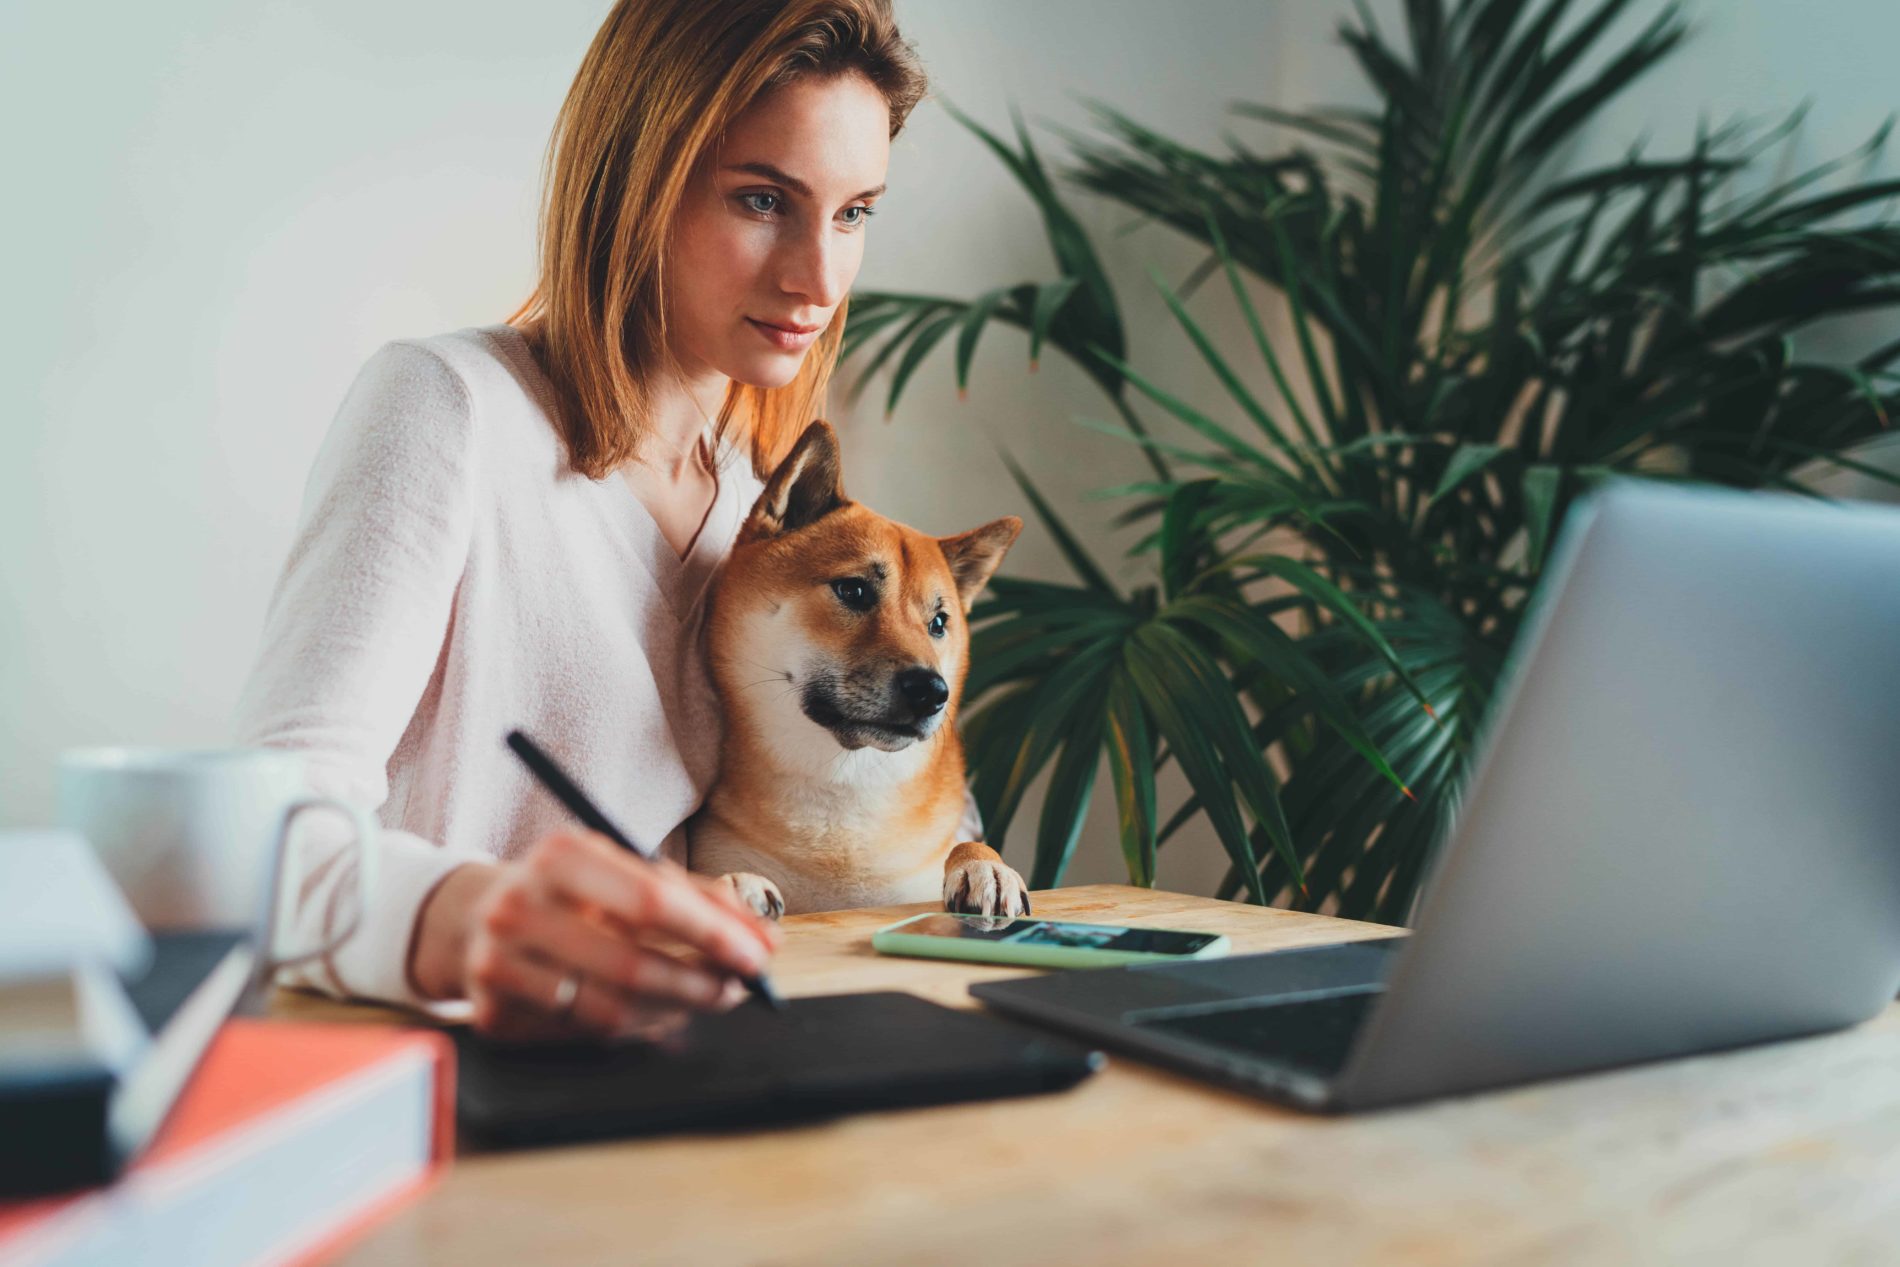 Woman and dog at computer